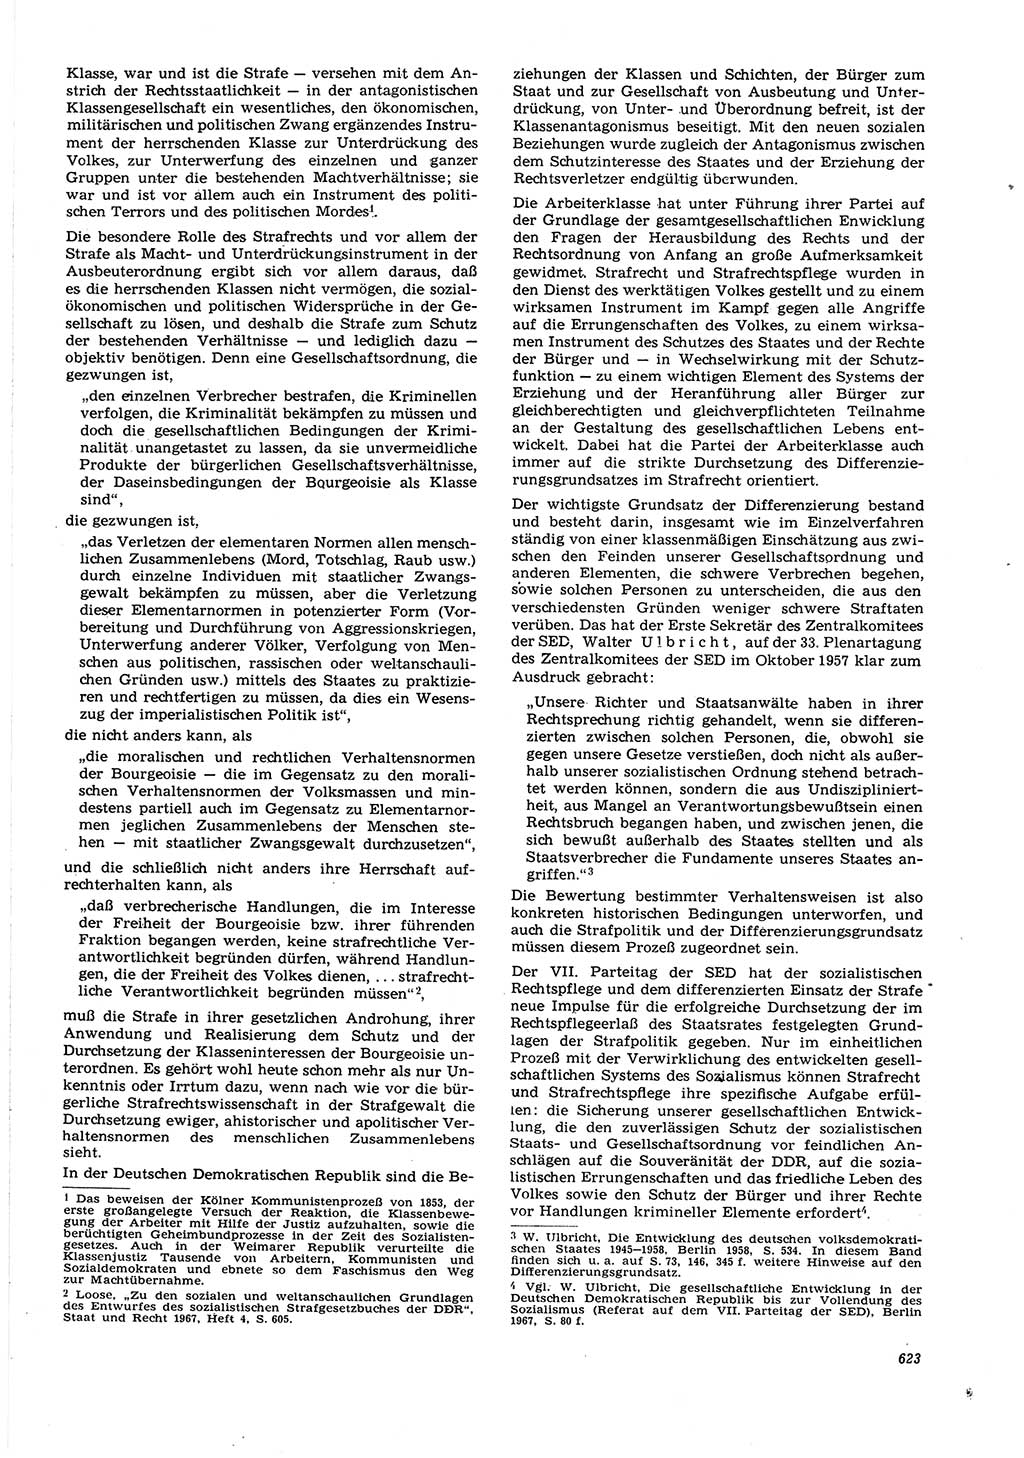 Neue Justiz (NJ), Zeitschrift für Recht und Rechtswissenschaft [Deutsche Demokratische Republik (DDR)], 21. Jahrgang 1967, Seite 623 (NJ DDR 1967, S. 623)